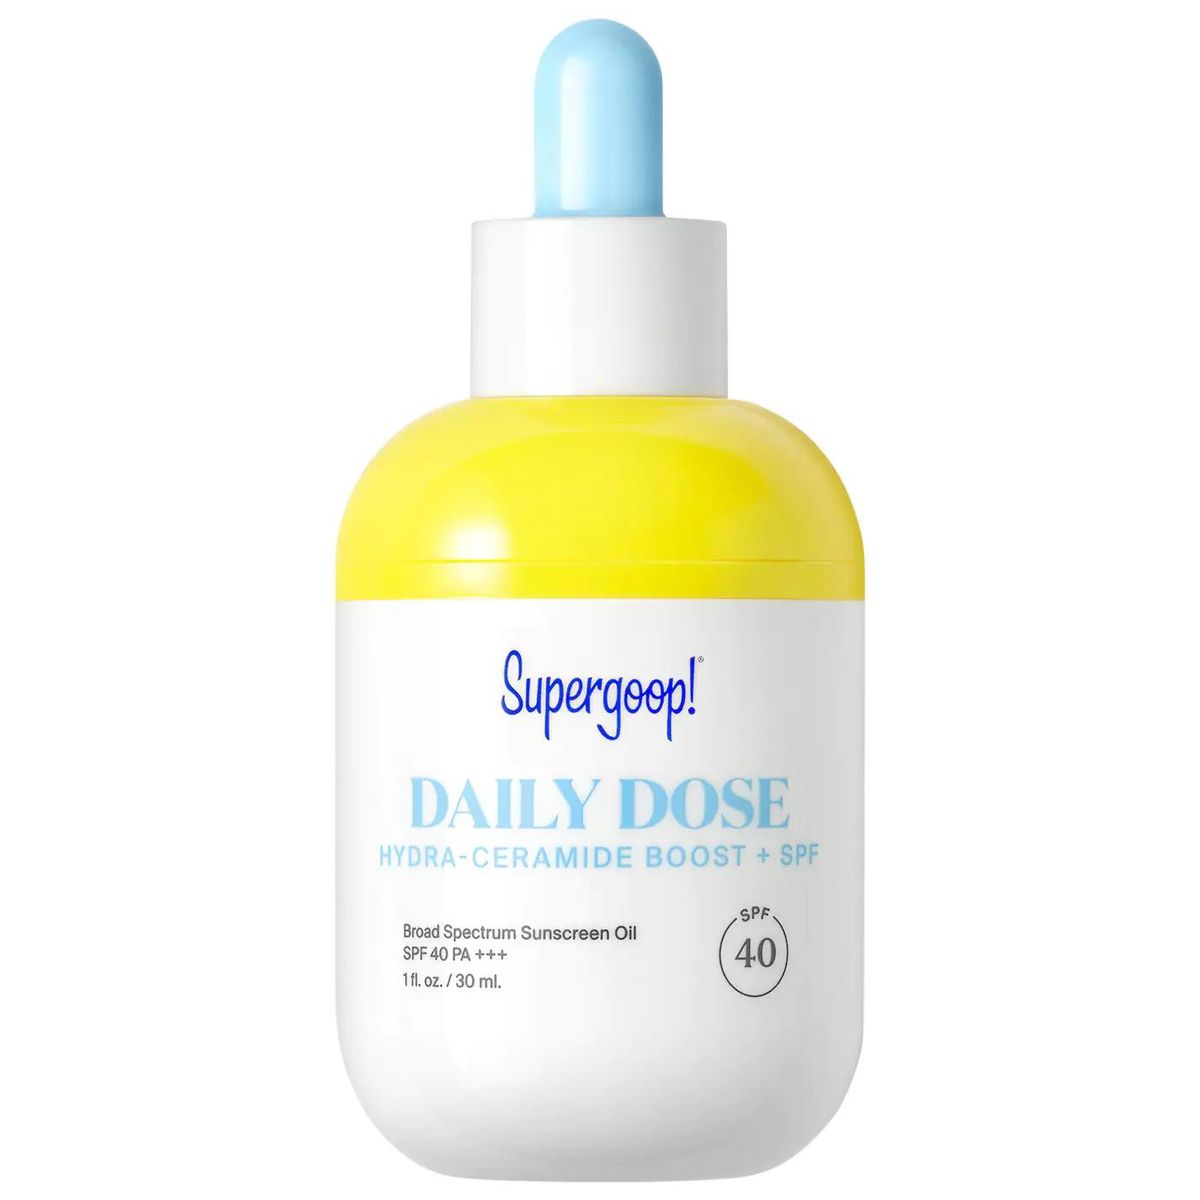 Daily Dose Hydra-Ceramide Boost + SPF 40 Sunscreen Oil